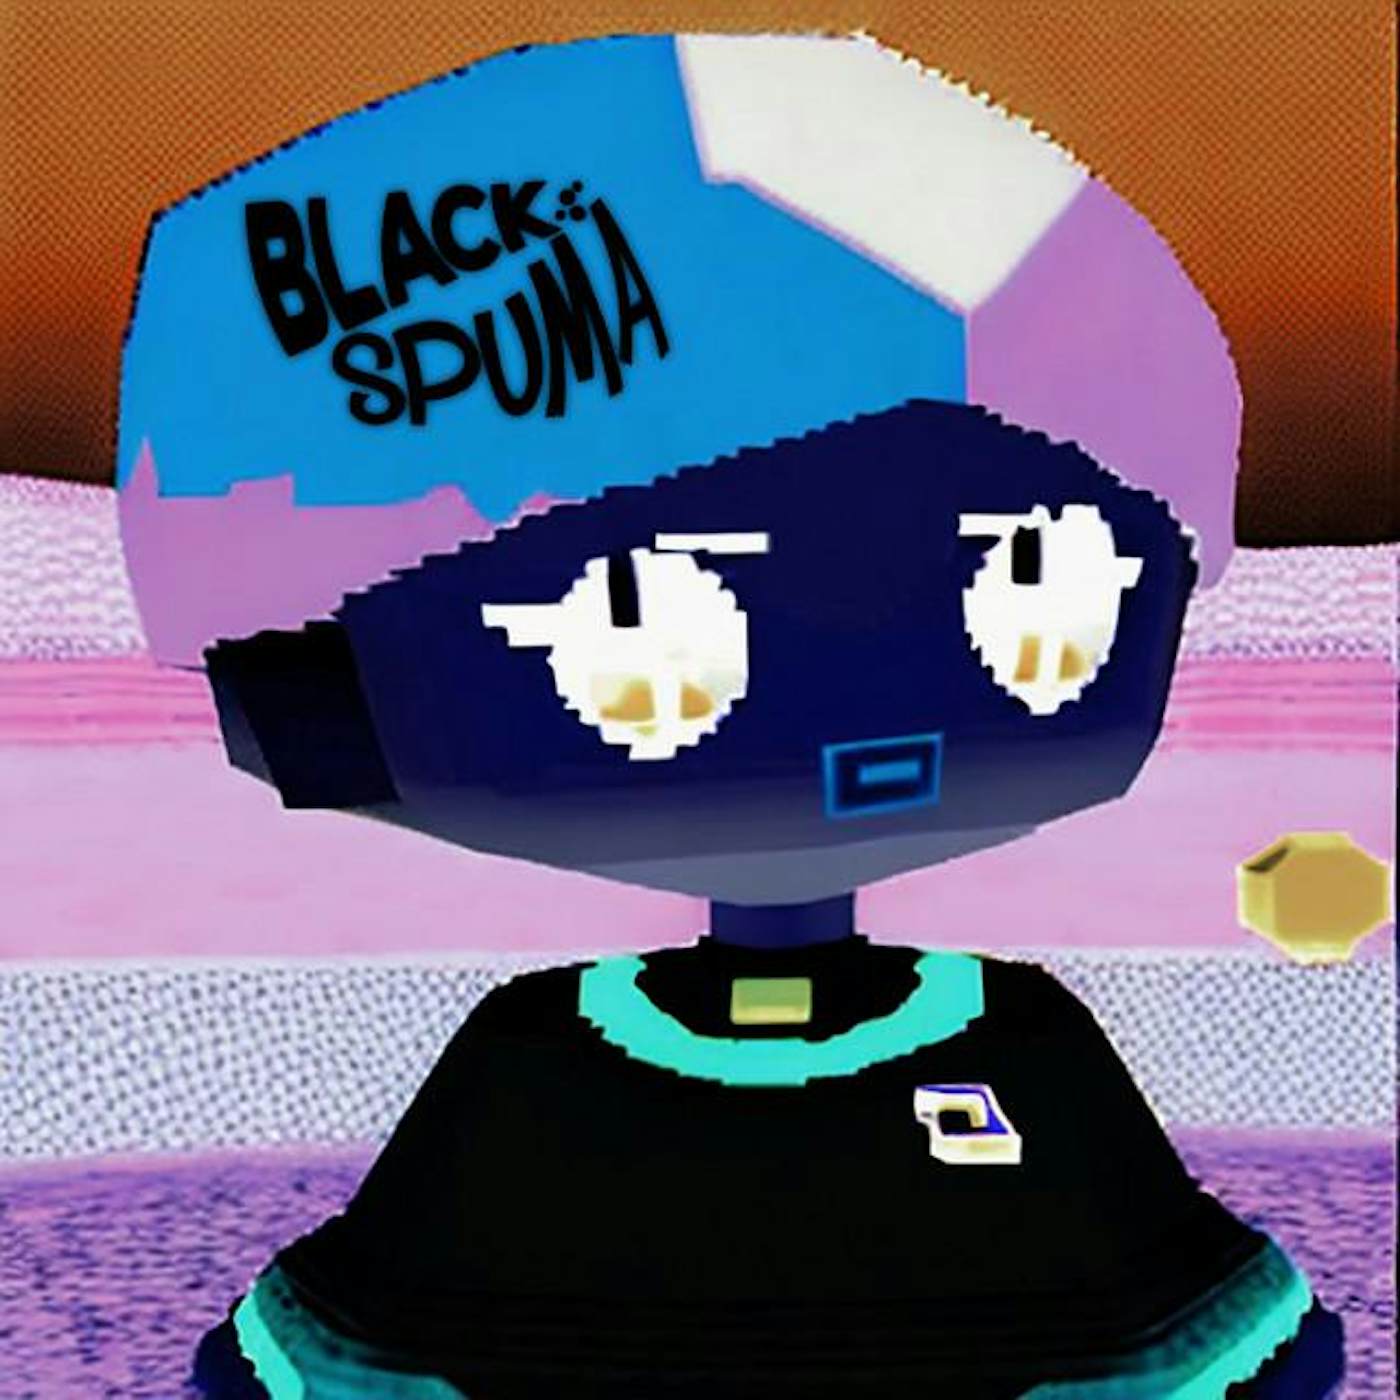 Black Spuma